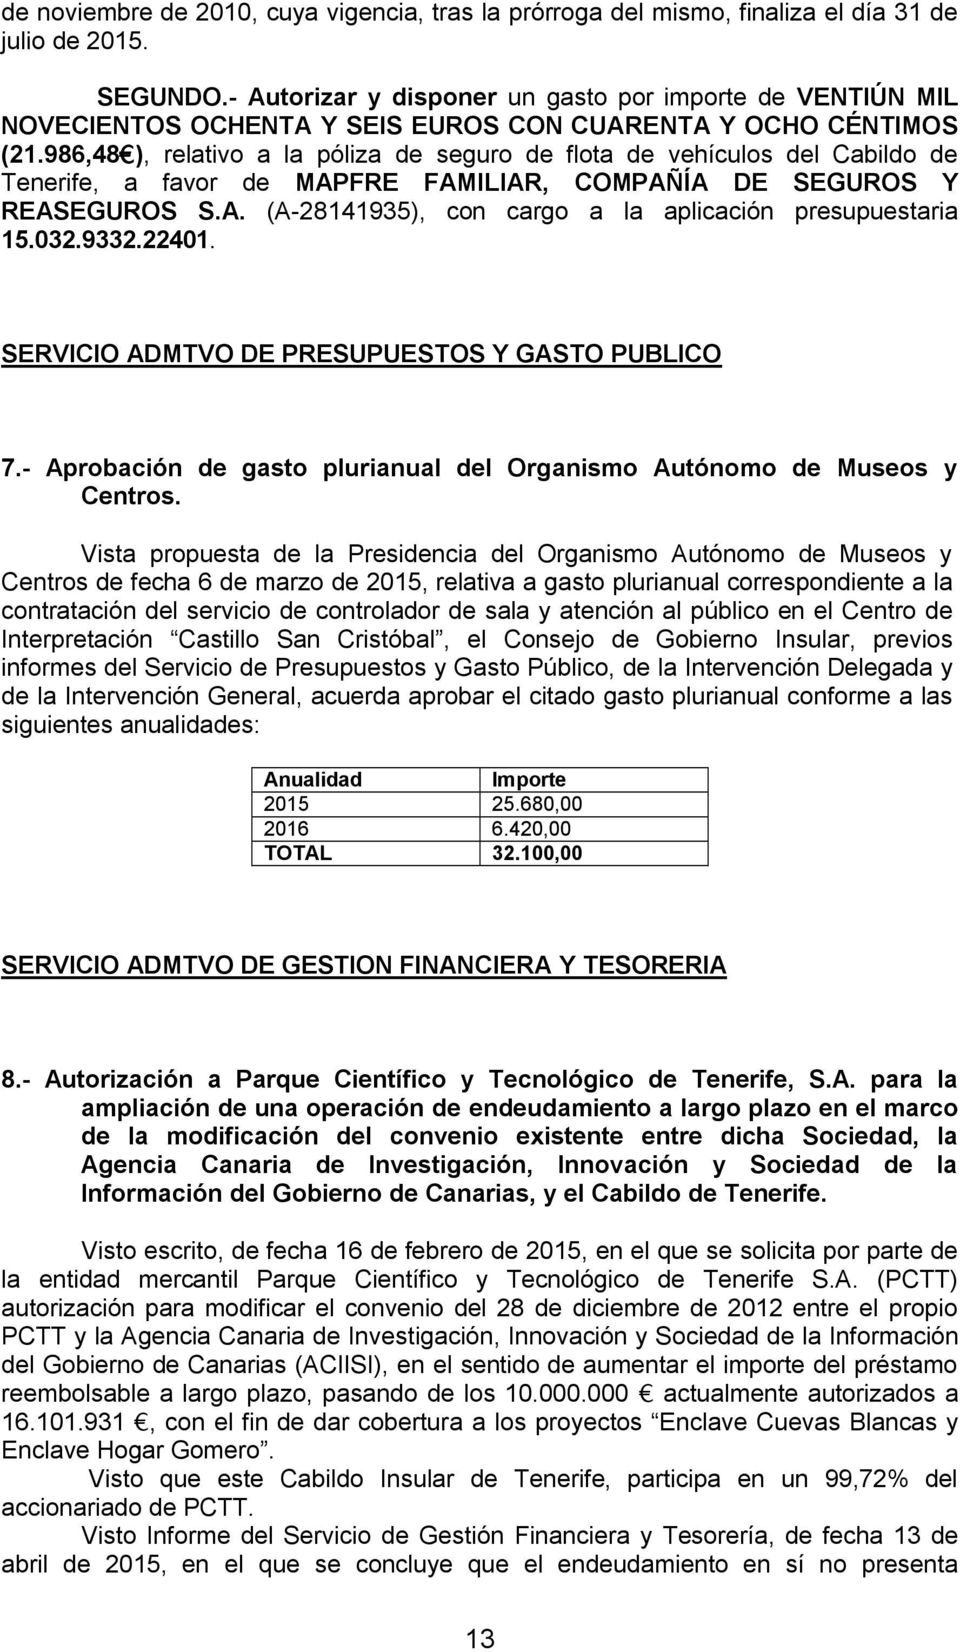 986,48 ), relativo a la póliza de seguro de flota de vehículos del Cabildo de Tenerife, a favor de MAPFRE FAMILIAR, COMPAÑÍA DE SEGUROS Y REASEGUROS S.A. (A-28141935), con cargo a la aplicación presupuestaria 15.